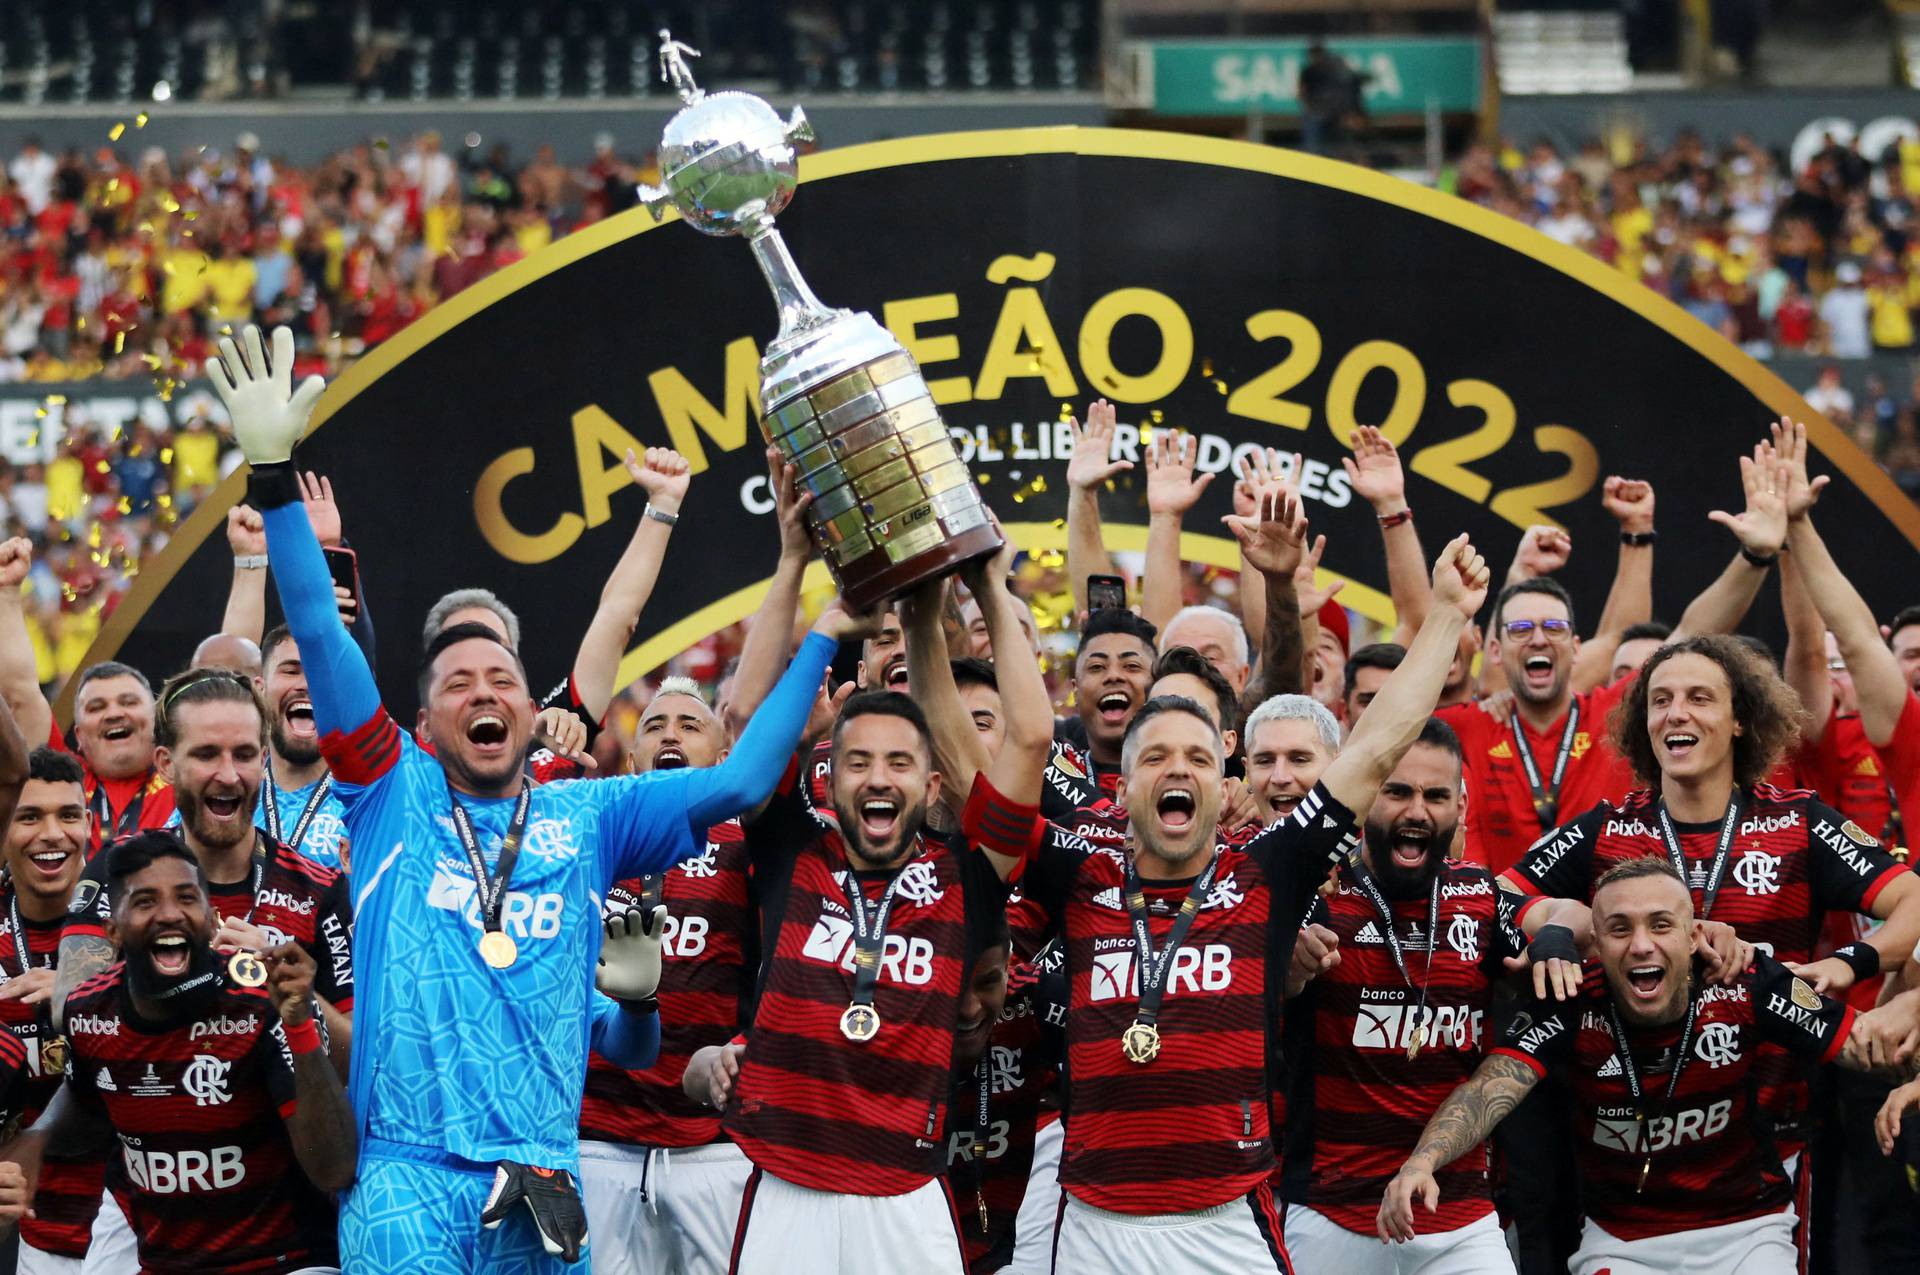 Copa Libertadores - Final - Flamengo v Athletico Paranaense